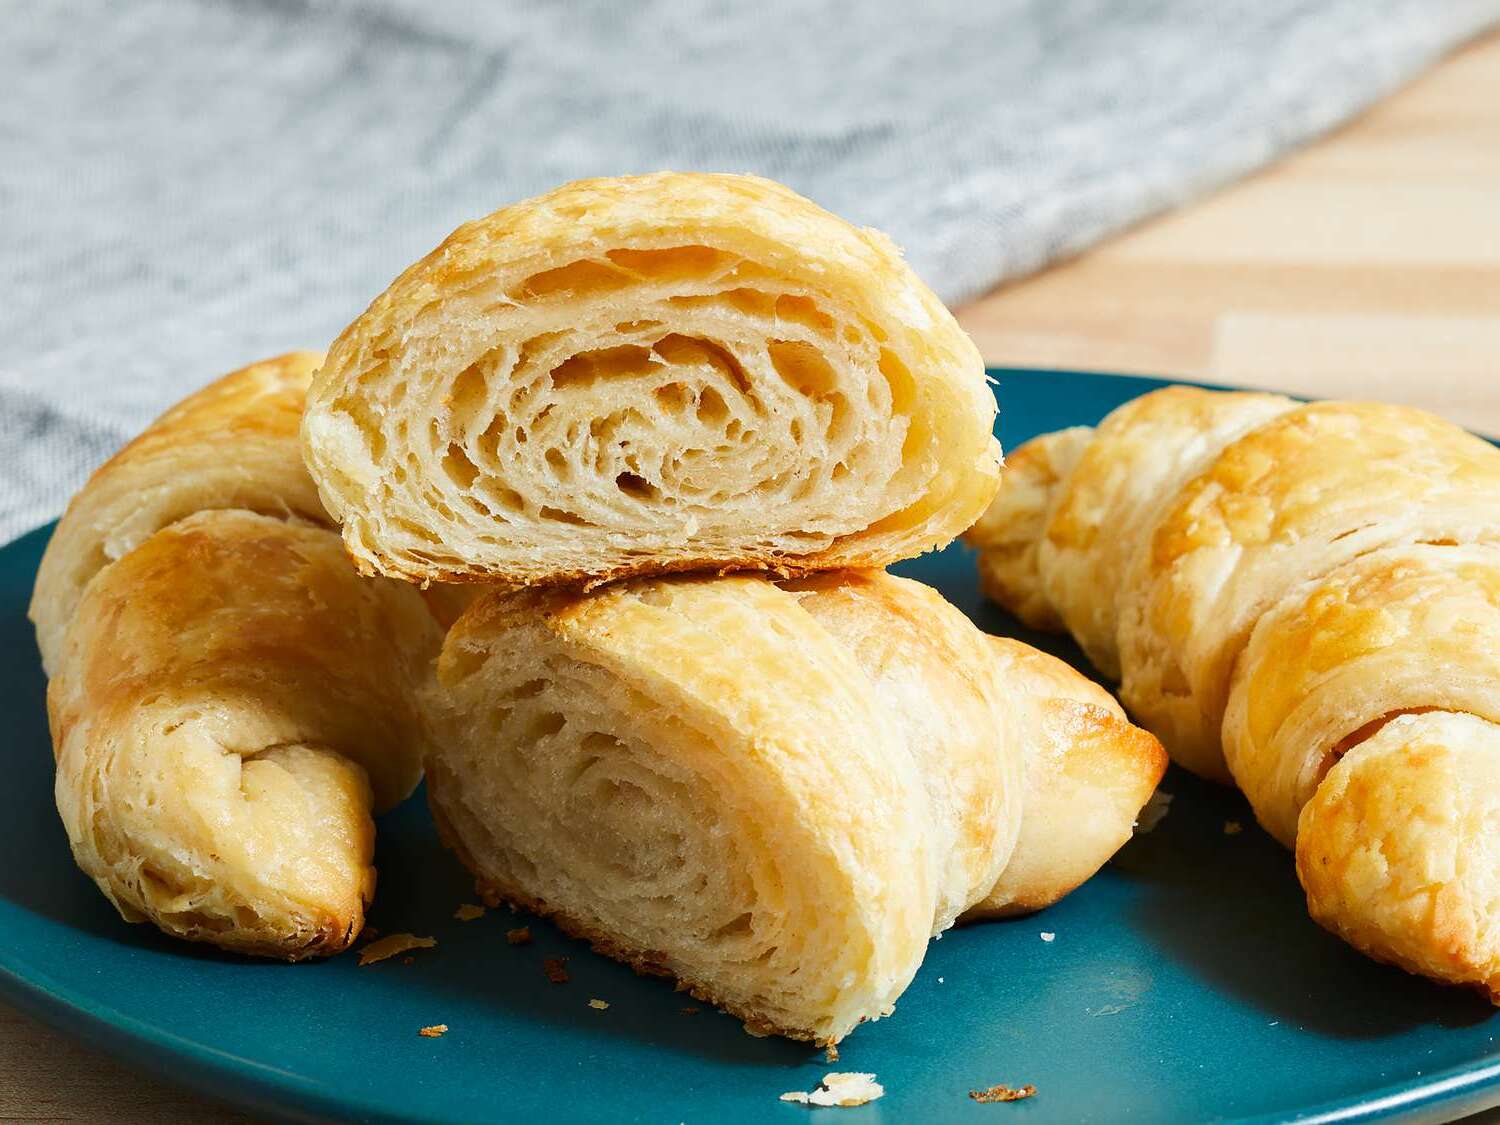 20-facts-about-croissant-calories